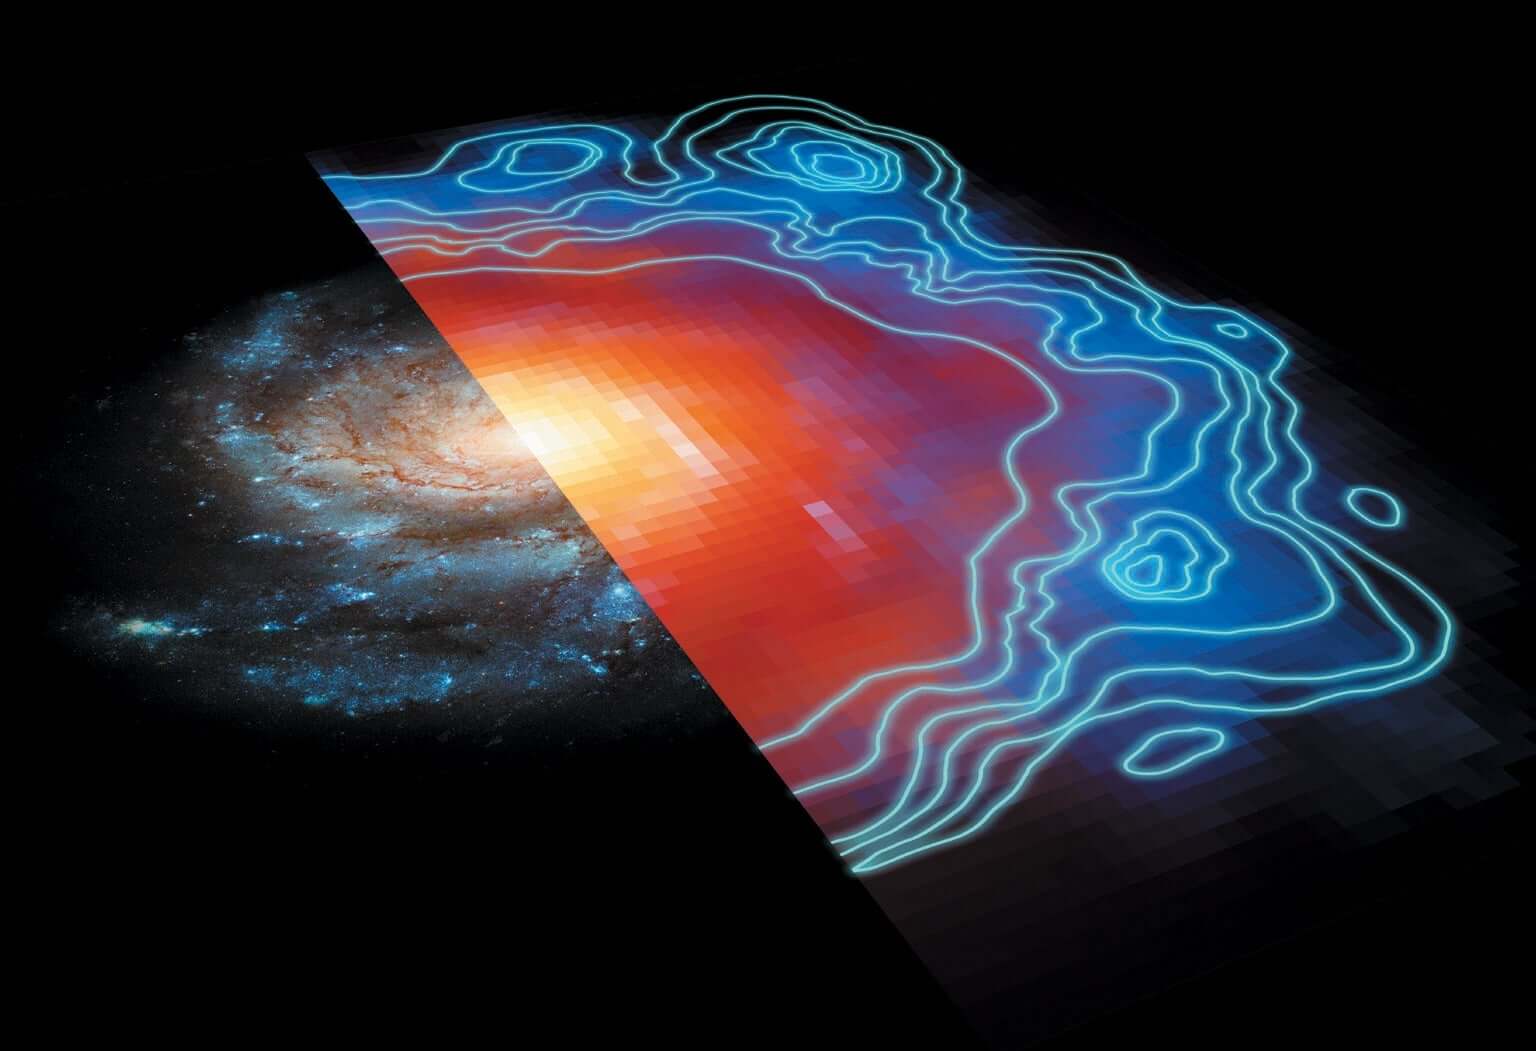 Как физики охотятся за темной материей? Можно ли обнаружить темную материю с помощью телескопов, атомных часов и подземных детекторов? Фото.